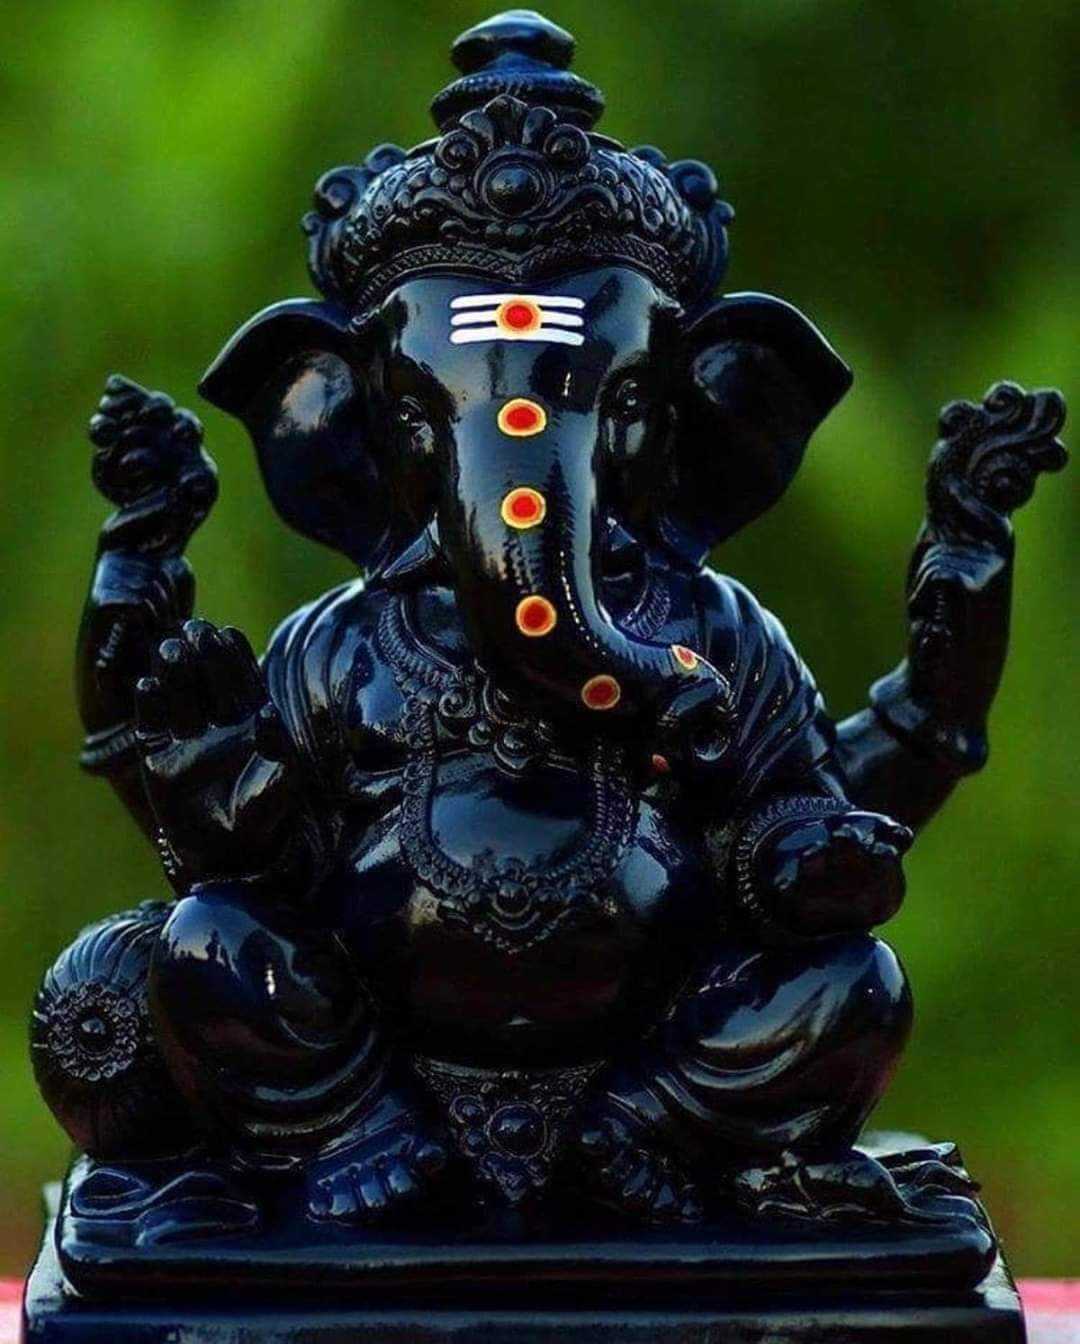 Hình nền Ganesha đen sẽ mang đến cho bạn sự lựa chọn hoàn hảo cho một màn hình đầy tính nghệ thuật và thẩm mỹ. Hãy khám phá những bức hình nền tuyệt đẹp này để tạo nên một diện mạo mới lạ cho thiết bị của bạn!